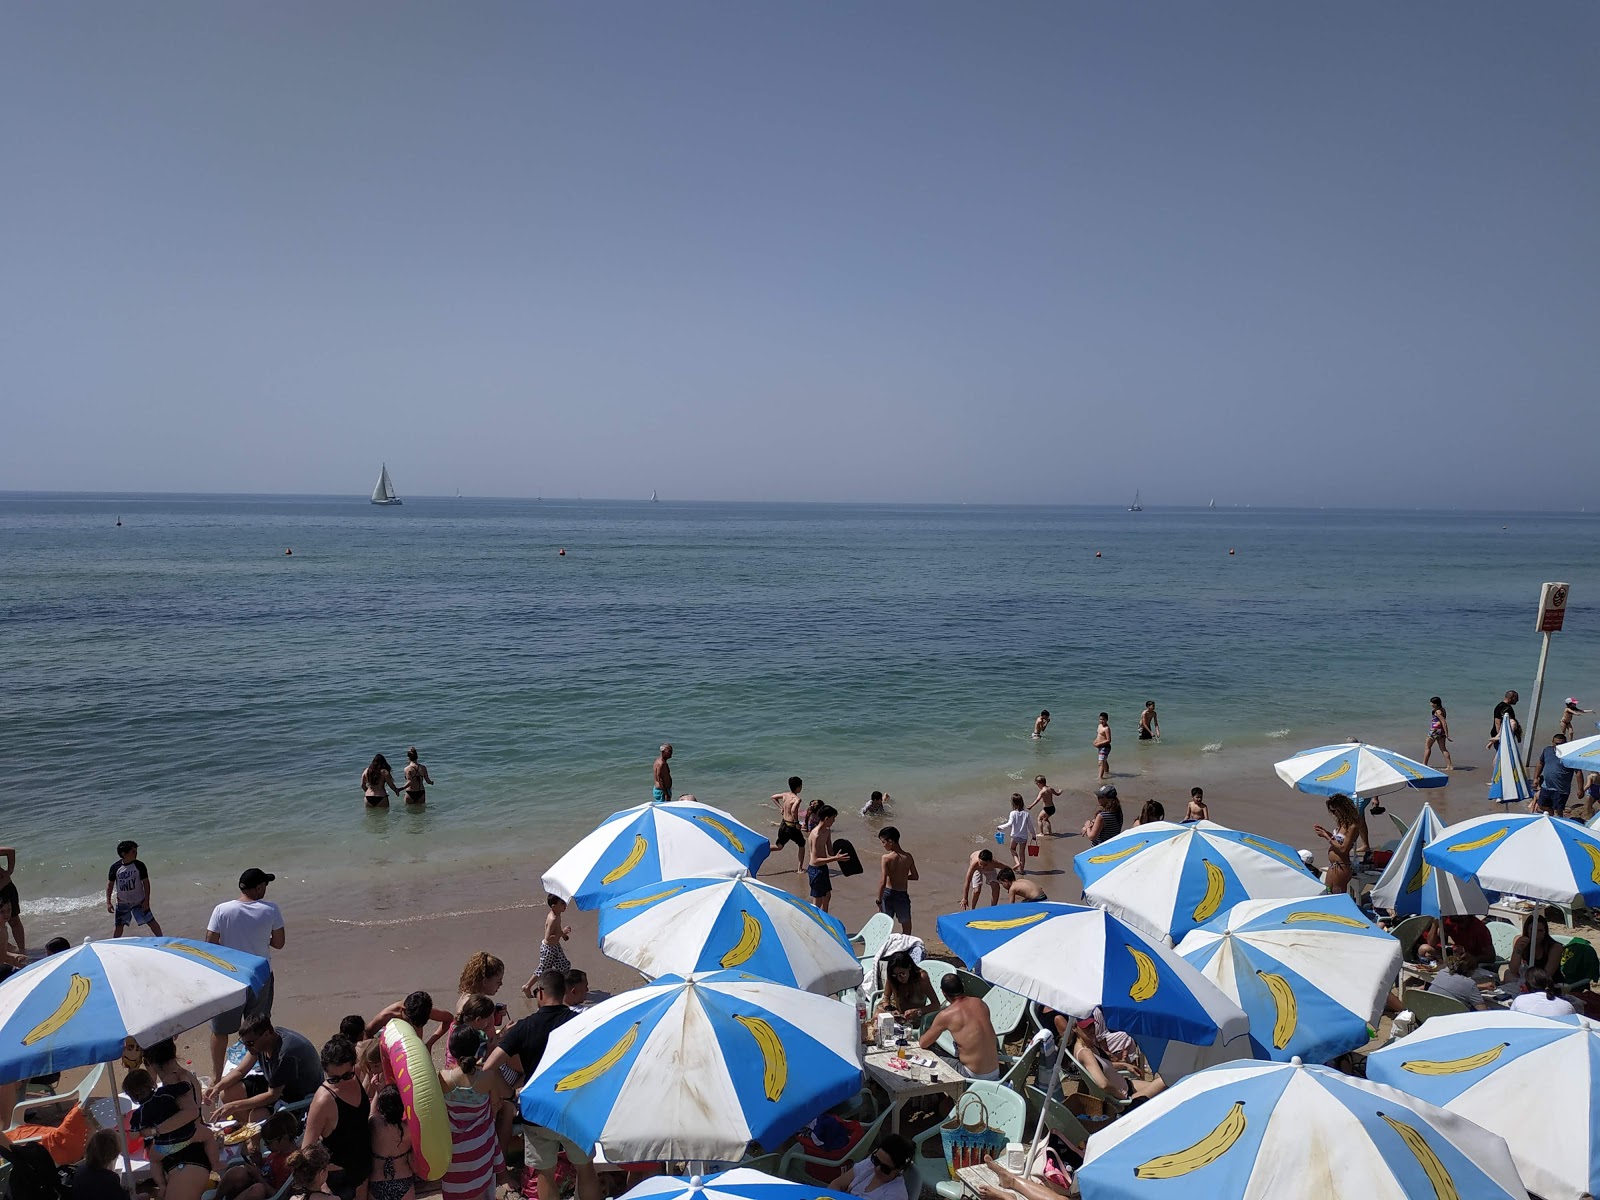 Fotografie cu Hatzuk beach - recomandat pentru călătorii în familie cu copii